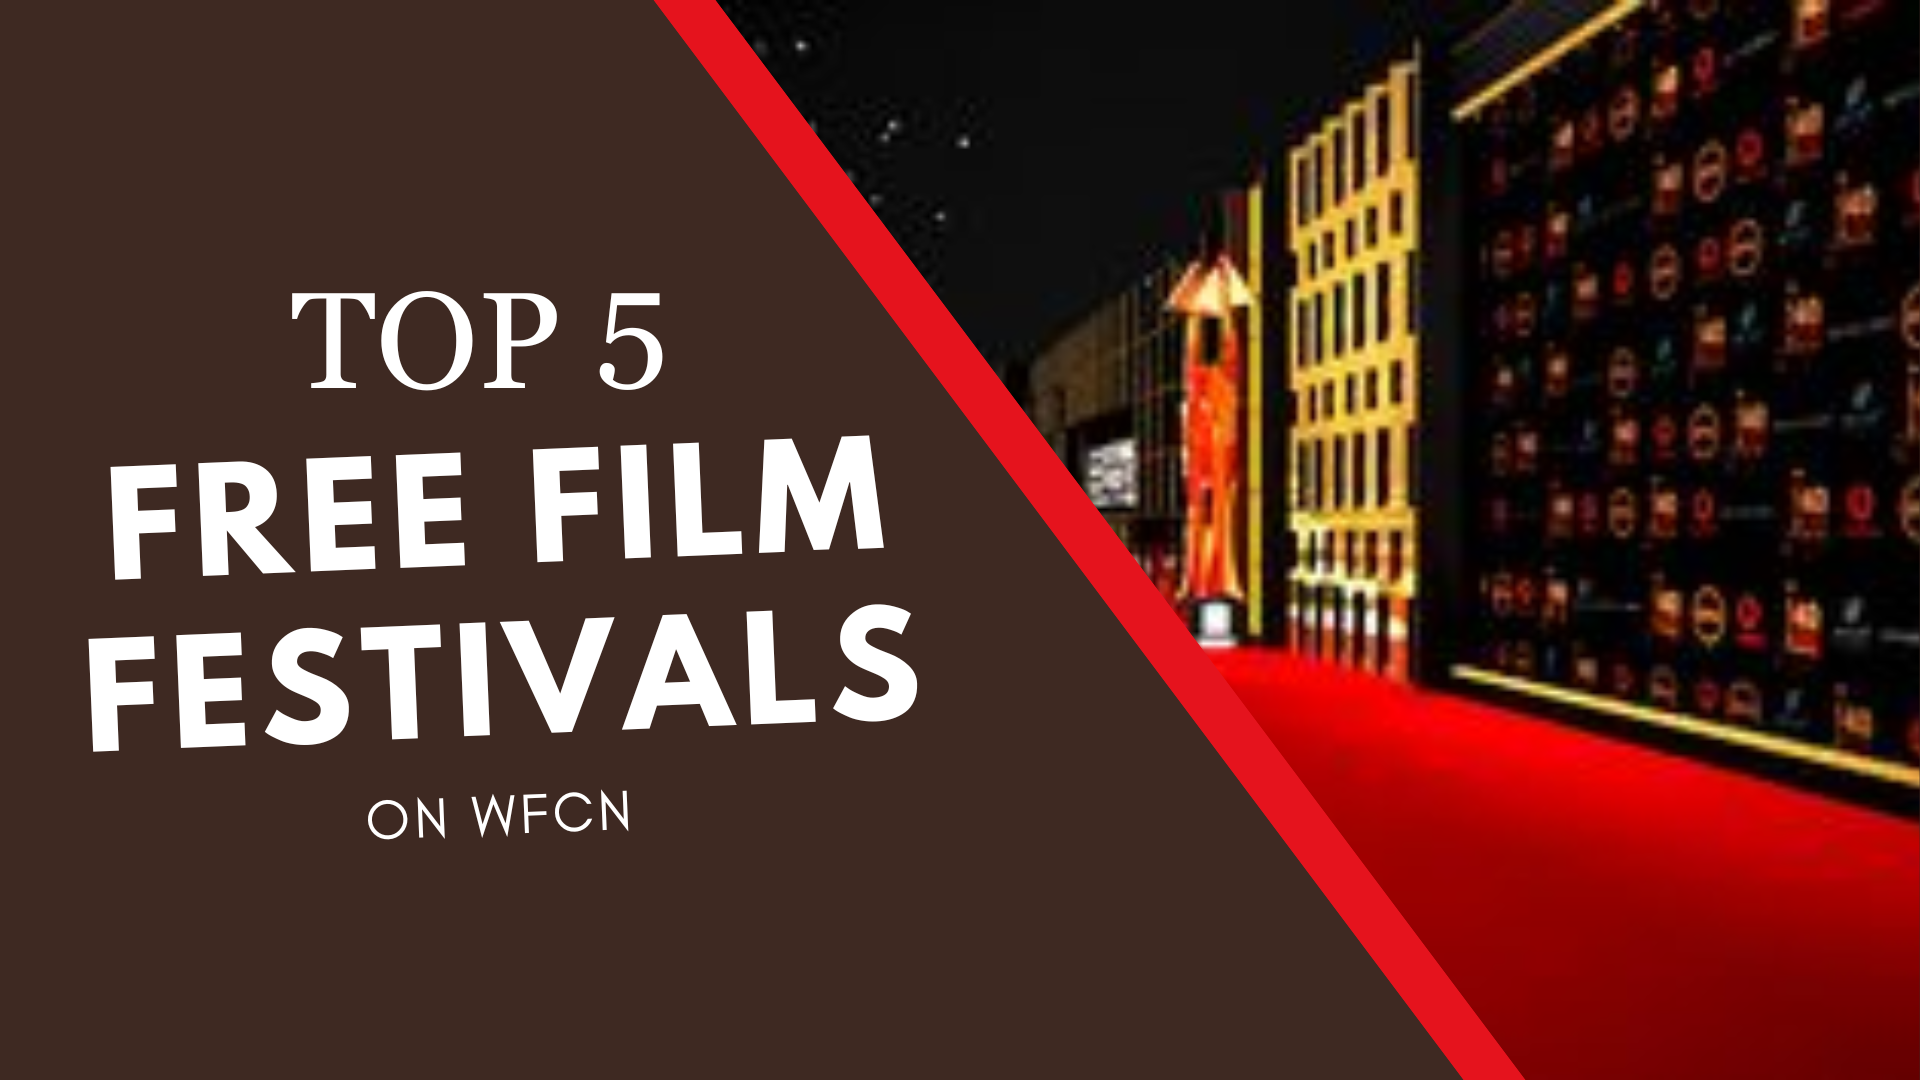 Top 5 Free Film Festivals on WFCN WFCN